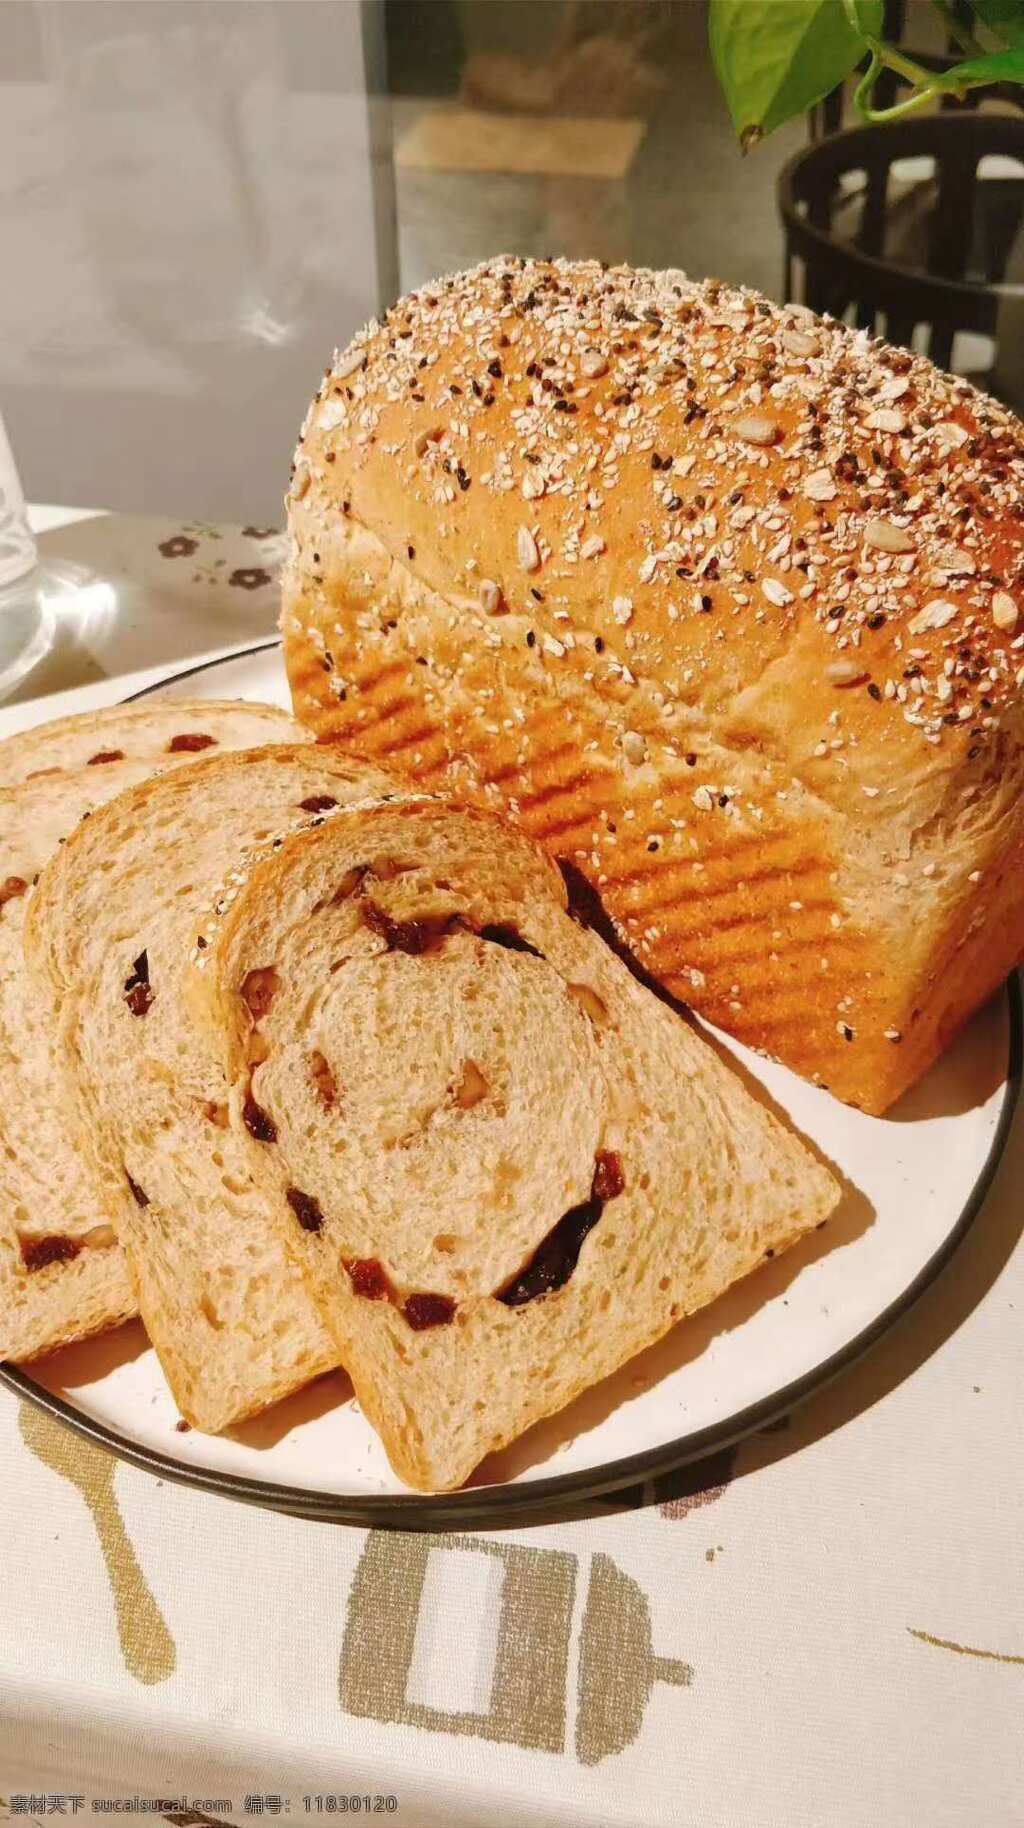 面包切片 面包 食品 方砖 烤面包 早餐 甜点 营养 烘焙 面食 小麦制品 美味 健康食品 餐饮美食 西餐美食